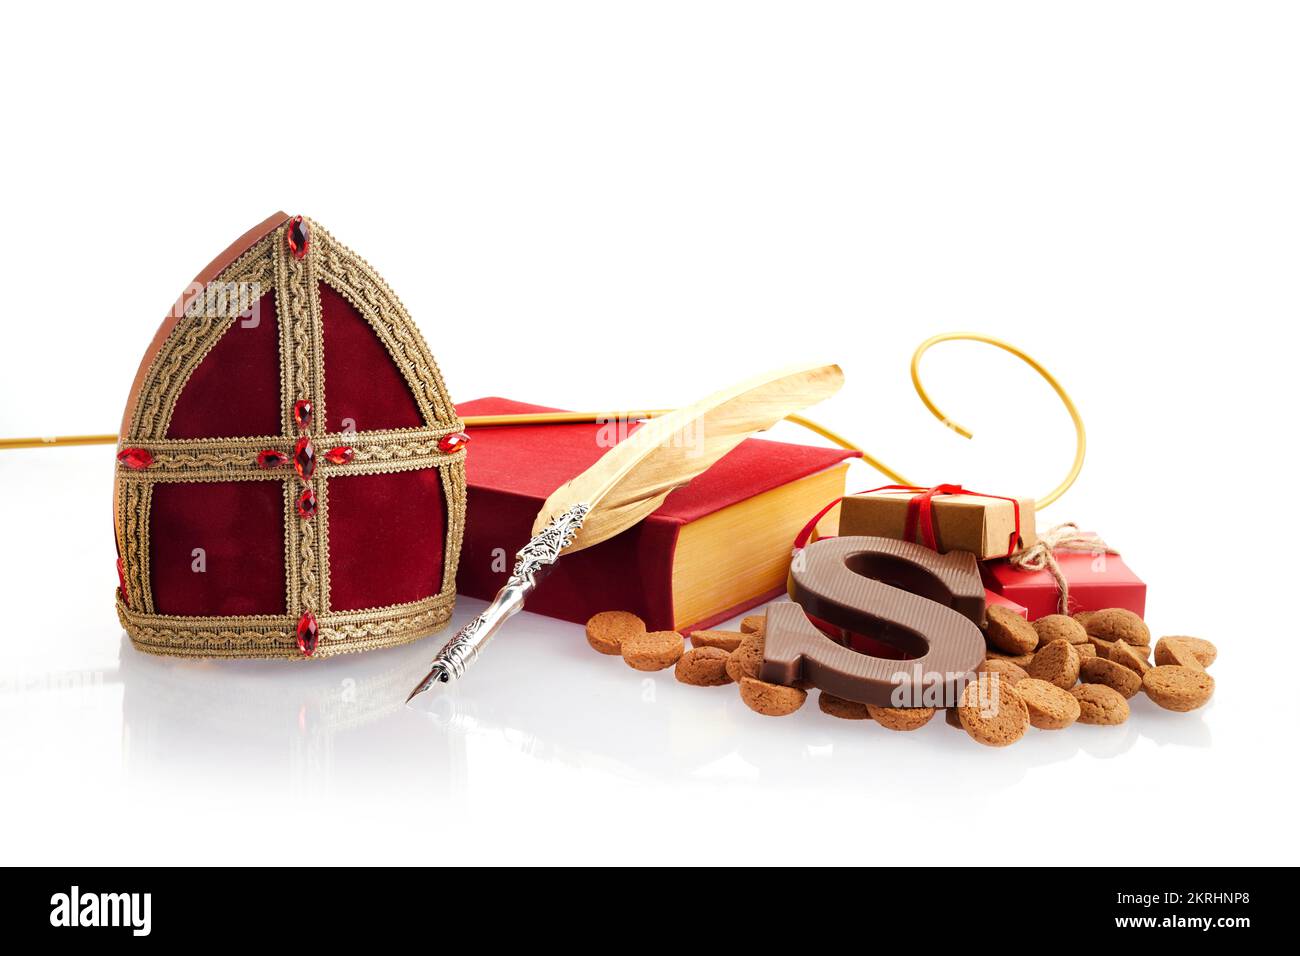 Sinterklaas - Saint-Nicolas en décembre. Vacances enfants aux pays-Bas ang Belgique. Biscuits au gingembre épicés au chocolat Banque D'Images